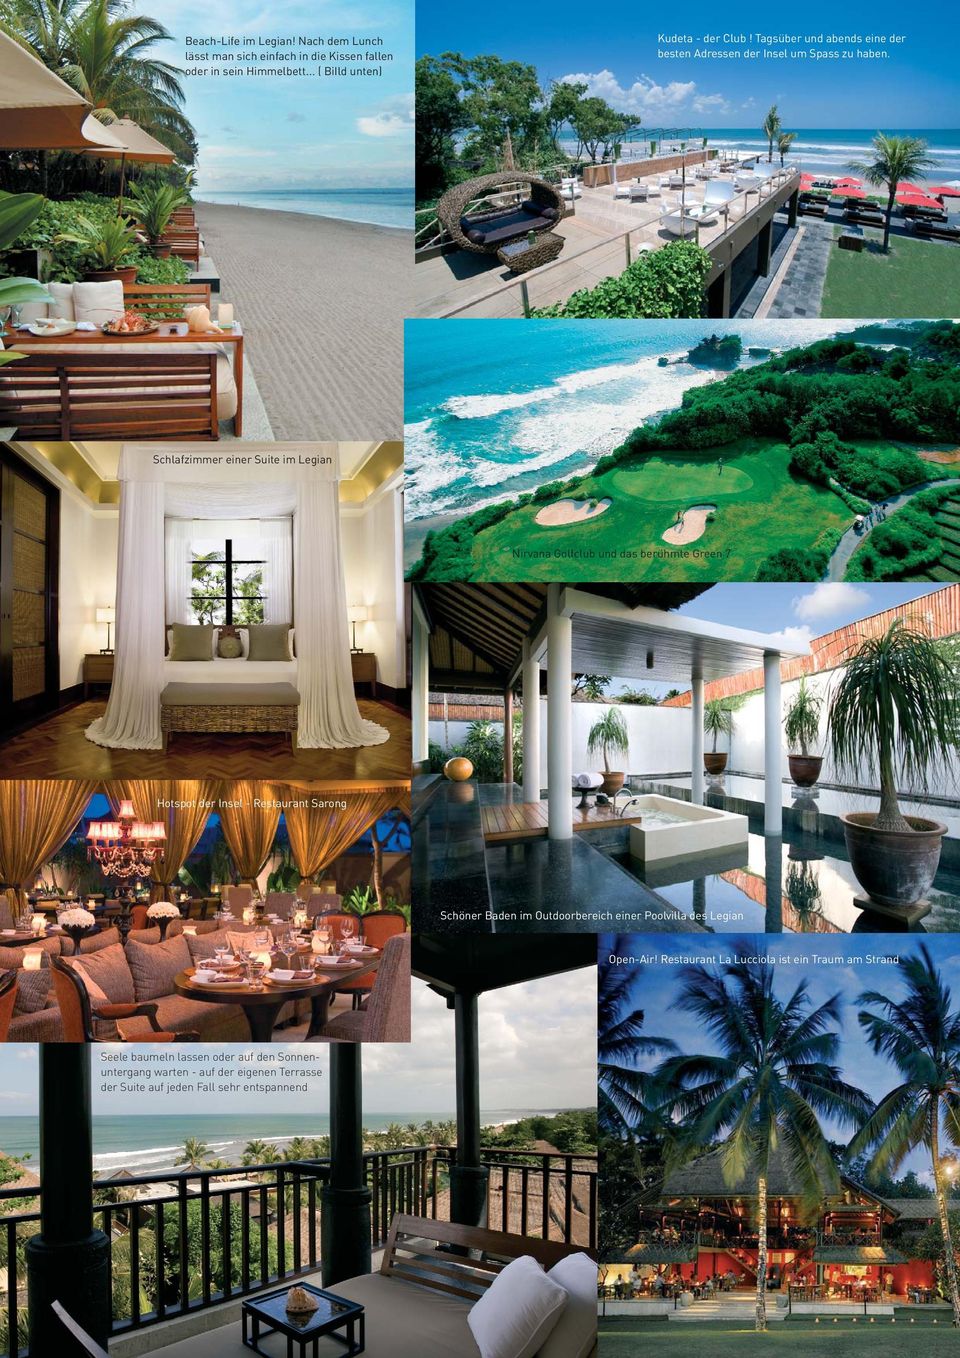 Schlafzimmer einer Suite im Legian Nirvana Golfclub und das berühmte Green 7 Hotspot der Insel - Restaurant Sarong Schöner Baden im Outdoorbereich